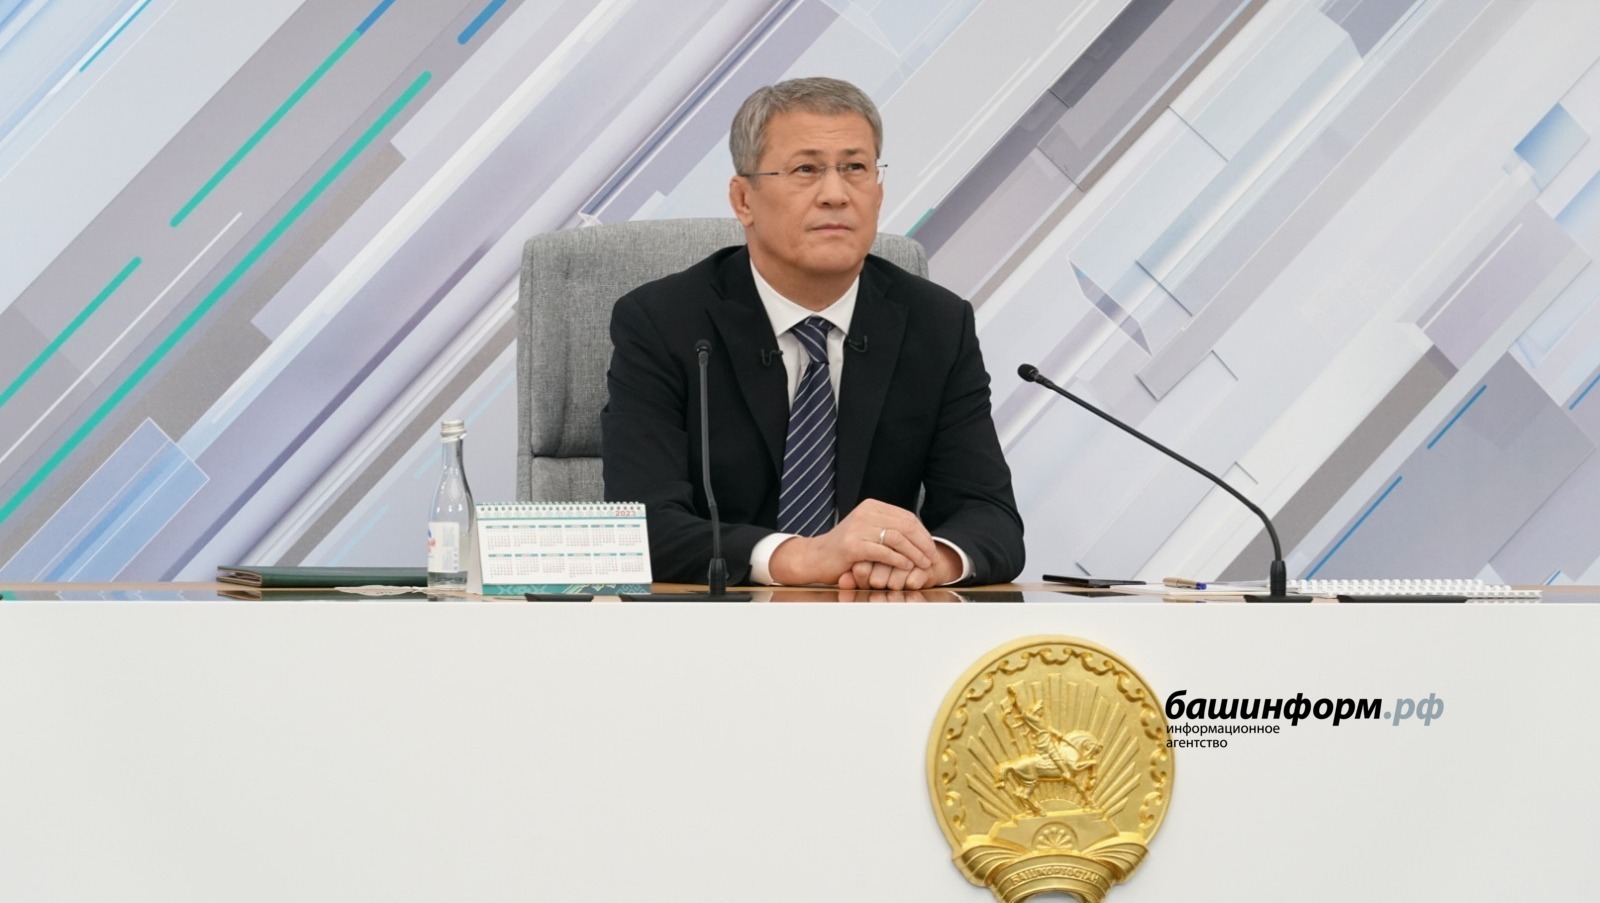 Глава Башкортостана Радий Хабиров ответил на вопросы о поездке в зону СВО